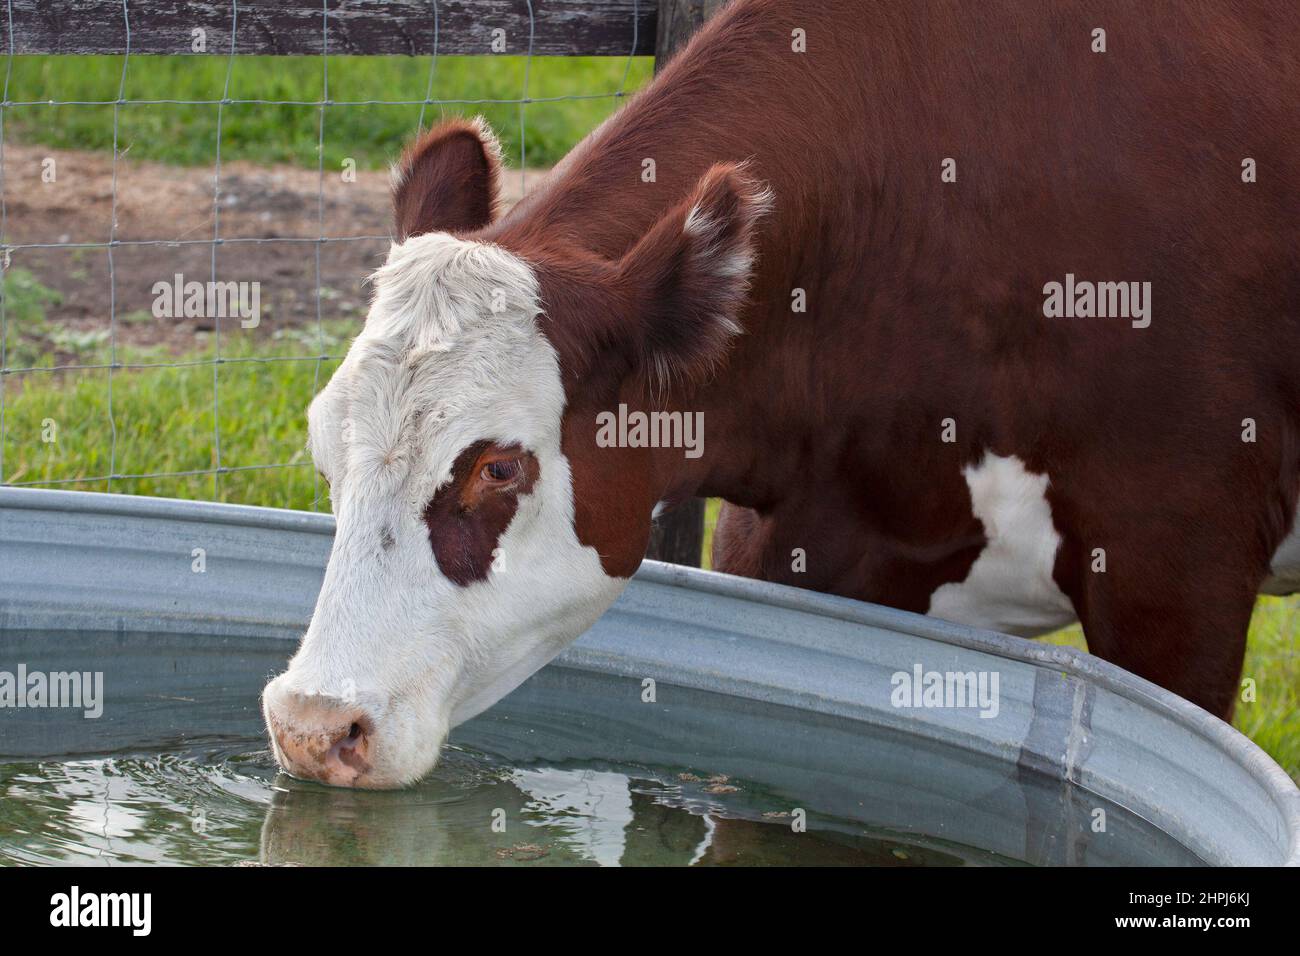 Une vache atteinte de la pollinisation de Hereford boit dans un bac d'eau extérieur dans un pâturage sur une ferme en Alberta, au Canada Banque D'Images